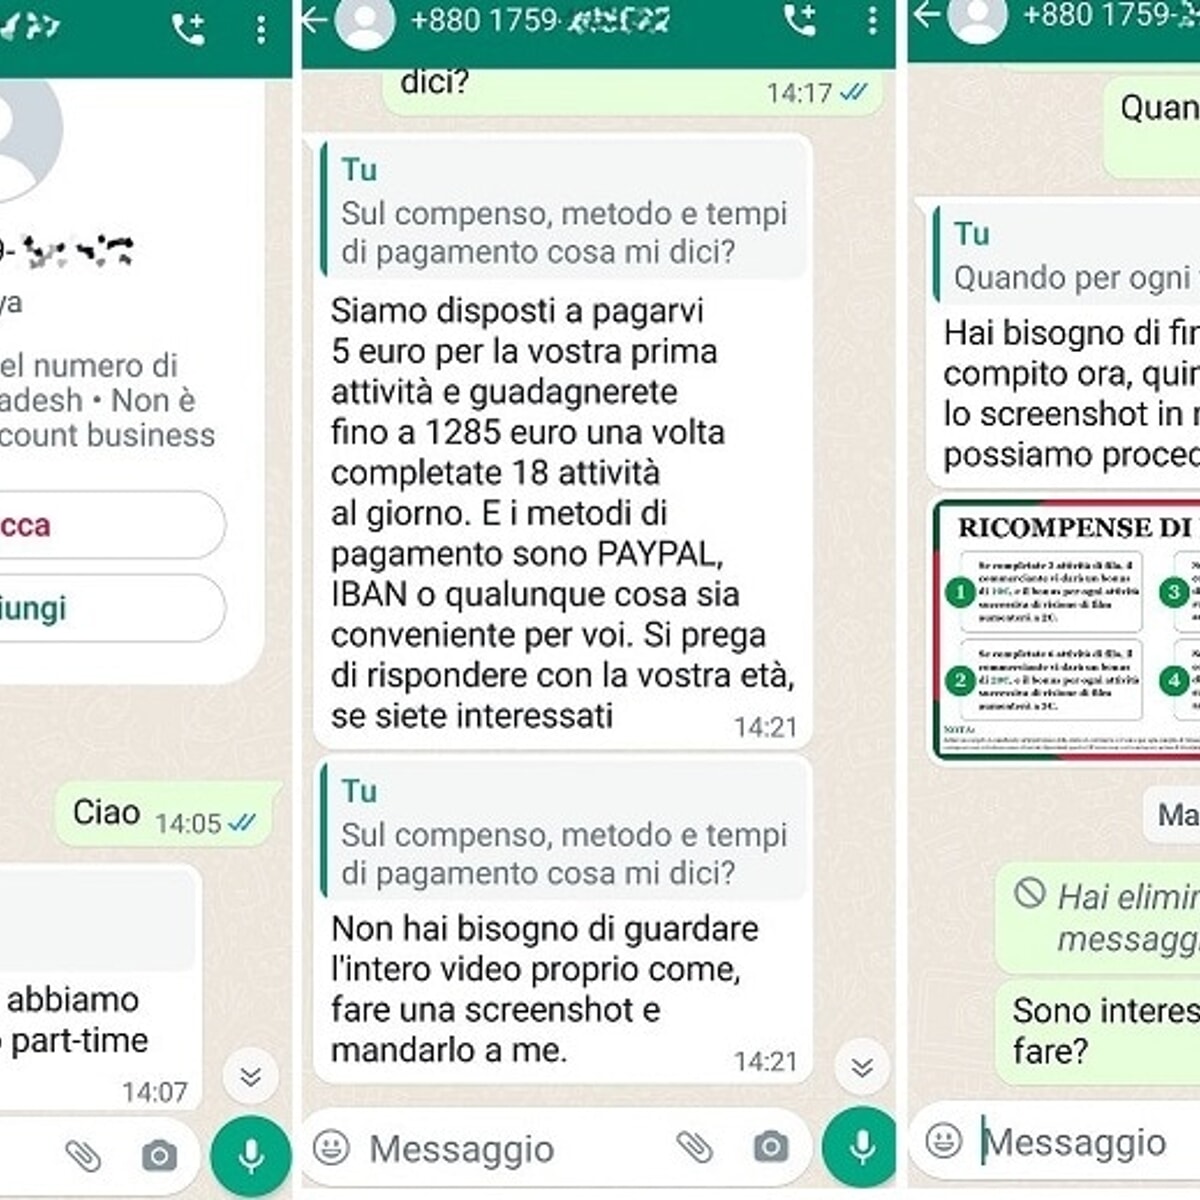 "Ti offriamo 1285 euro per lavorare da casa": ecco come volevano truffarmi su Whatsapp